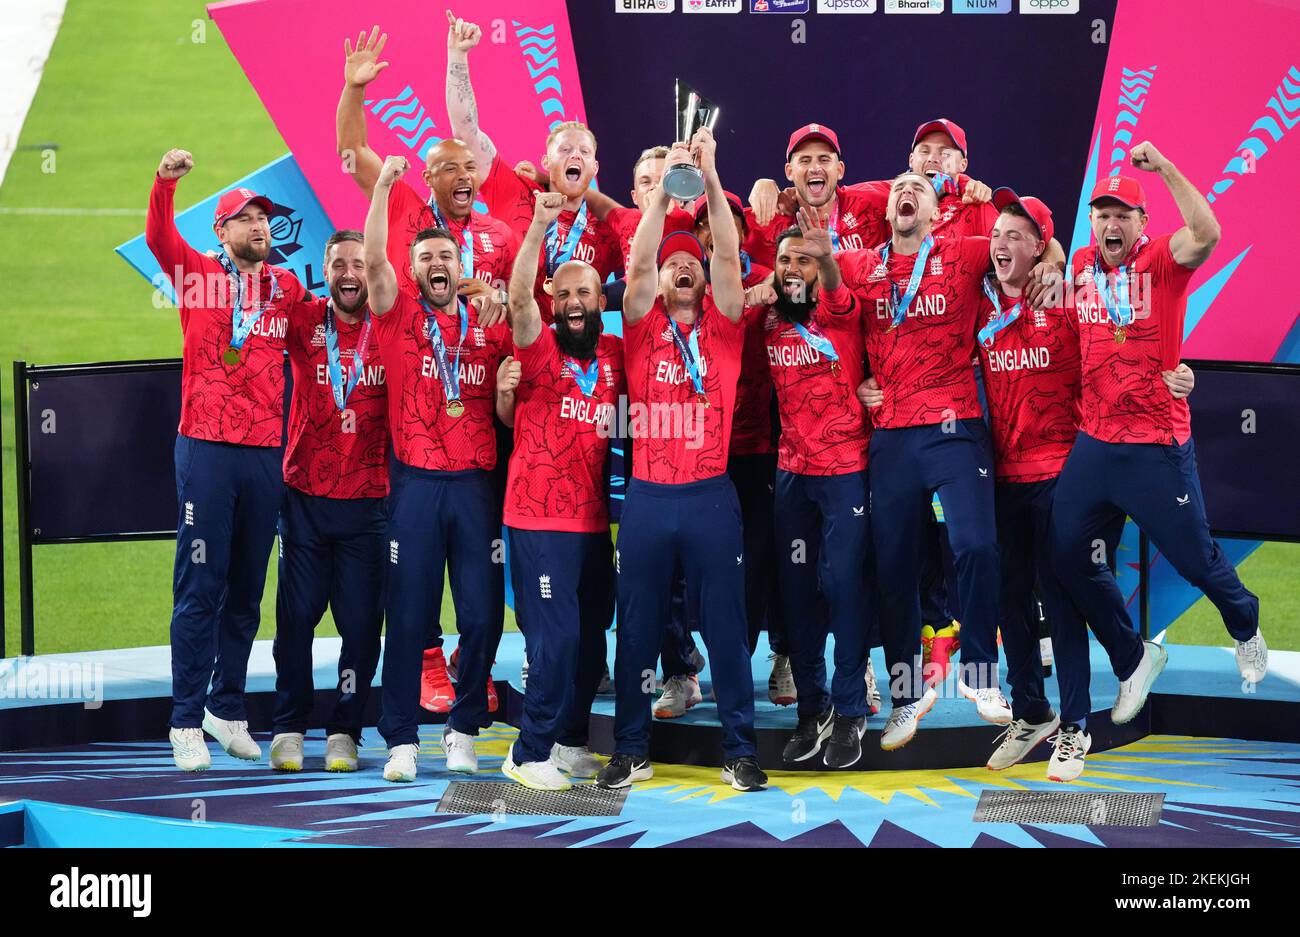 L'Inghilterra solleva il trofeo dopo aver vinto la finale di Coppa del mondo T20 al Melbourne Cricket Ground, Melbourne. Data immagine: Domenica 13 novembre 2022. Foto Stock